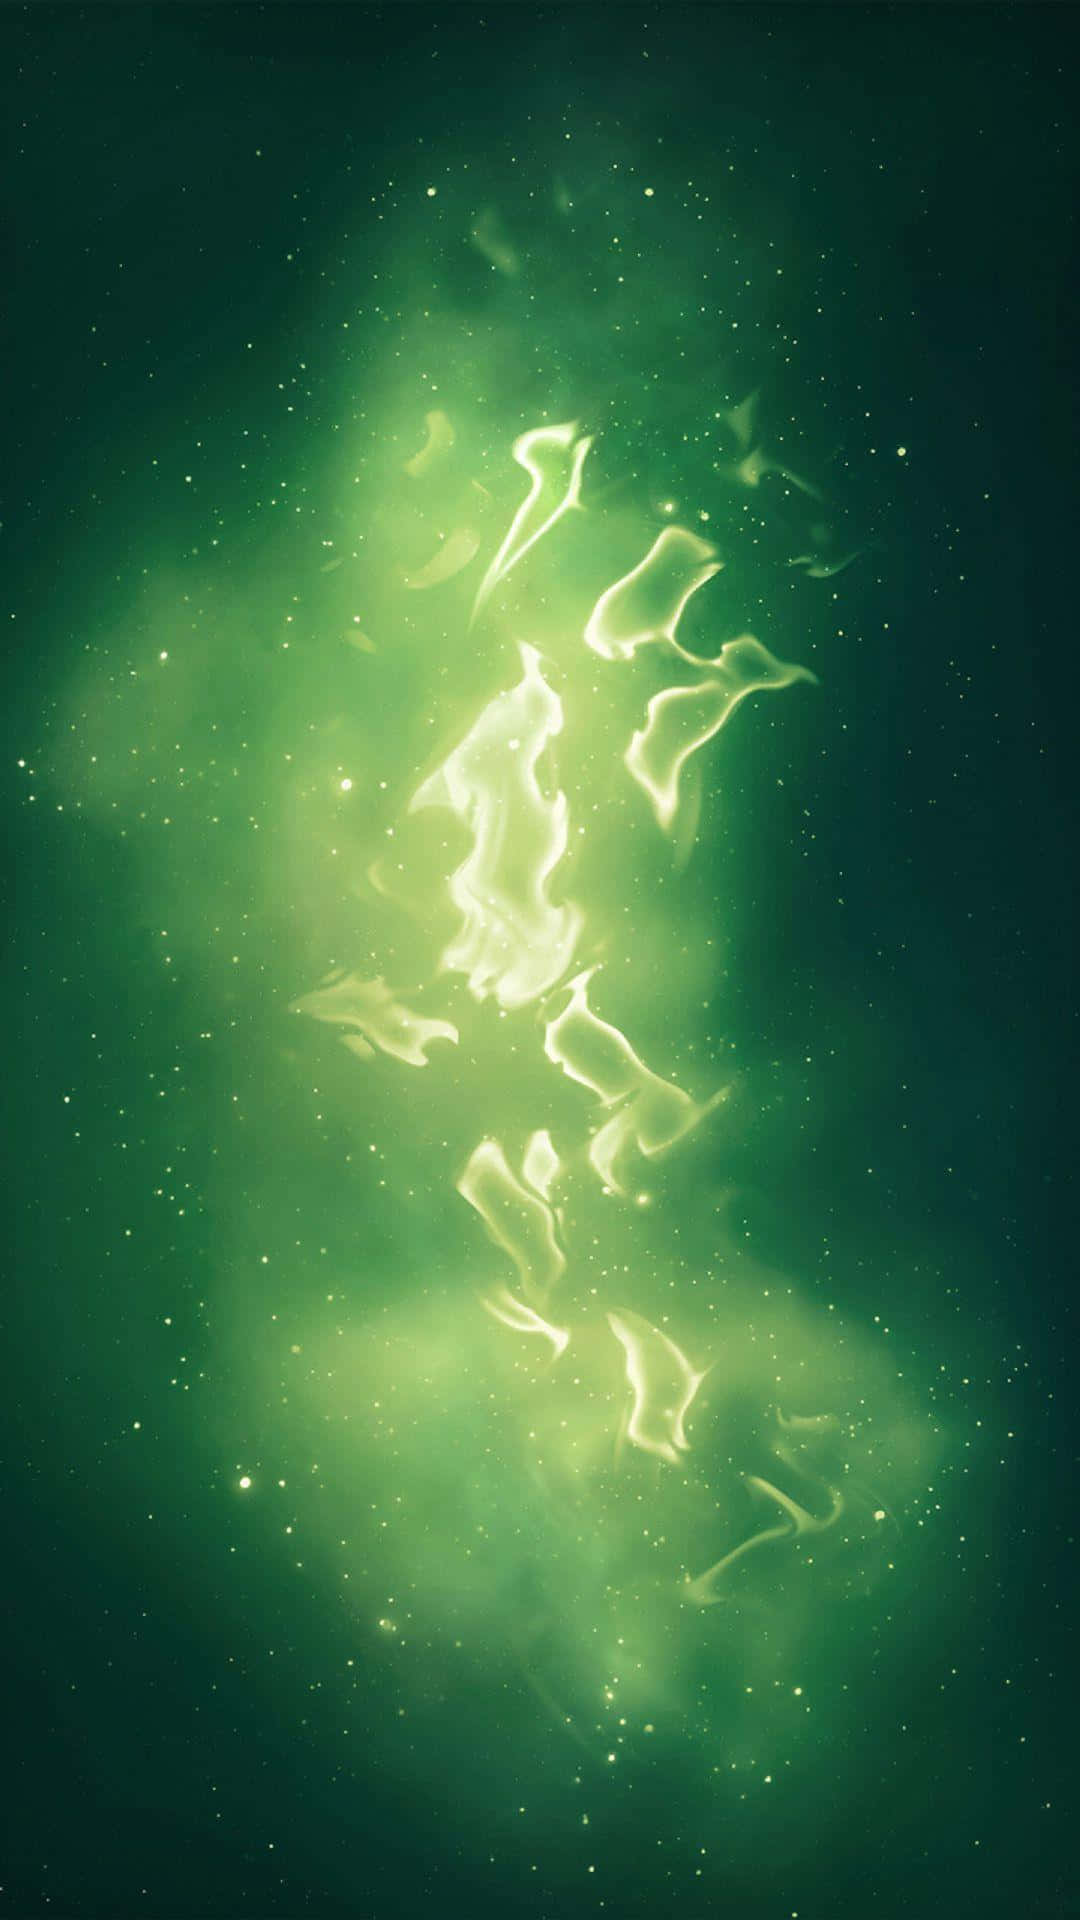 Dykner I En Utforskning Bortom Denna Värld Genom En Grön Galax. Wallpaper